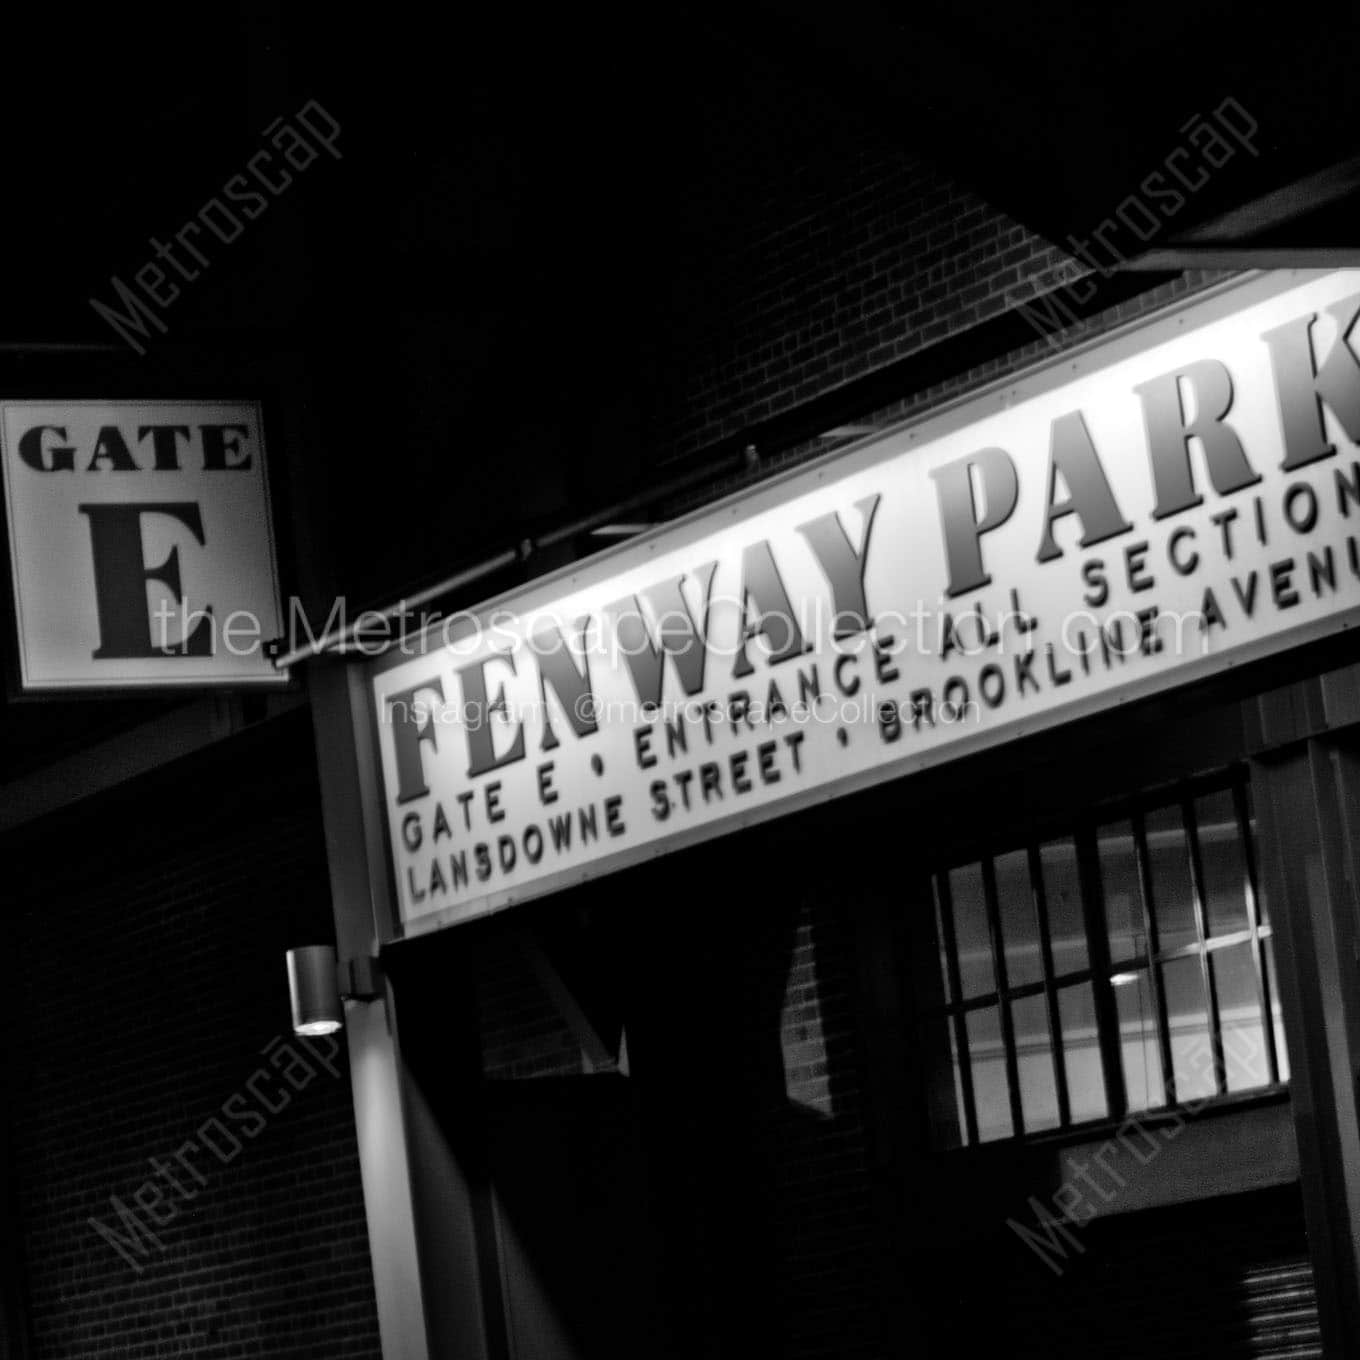 fenway park gate e Black & White Office Art